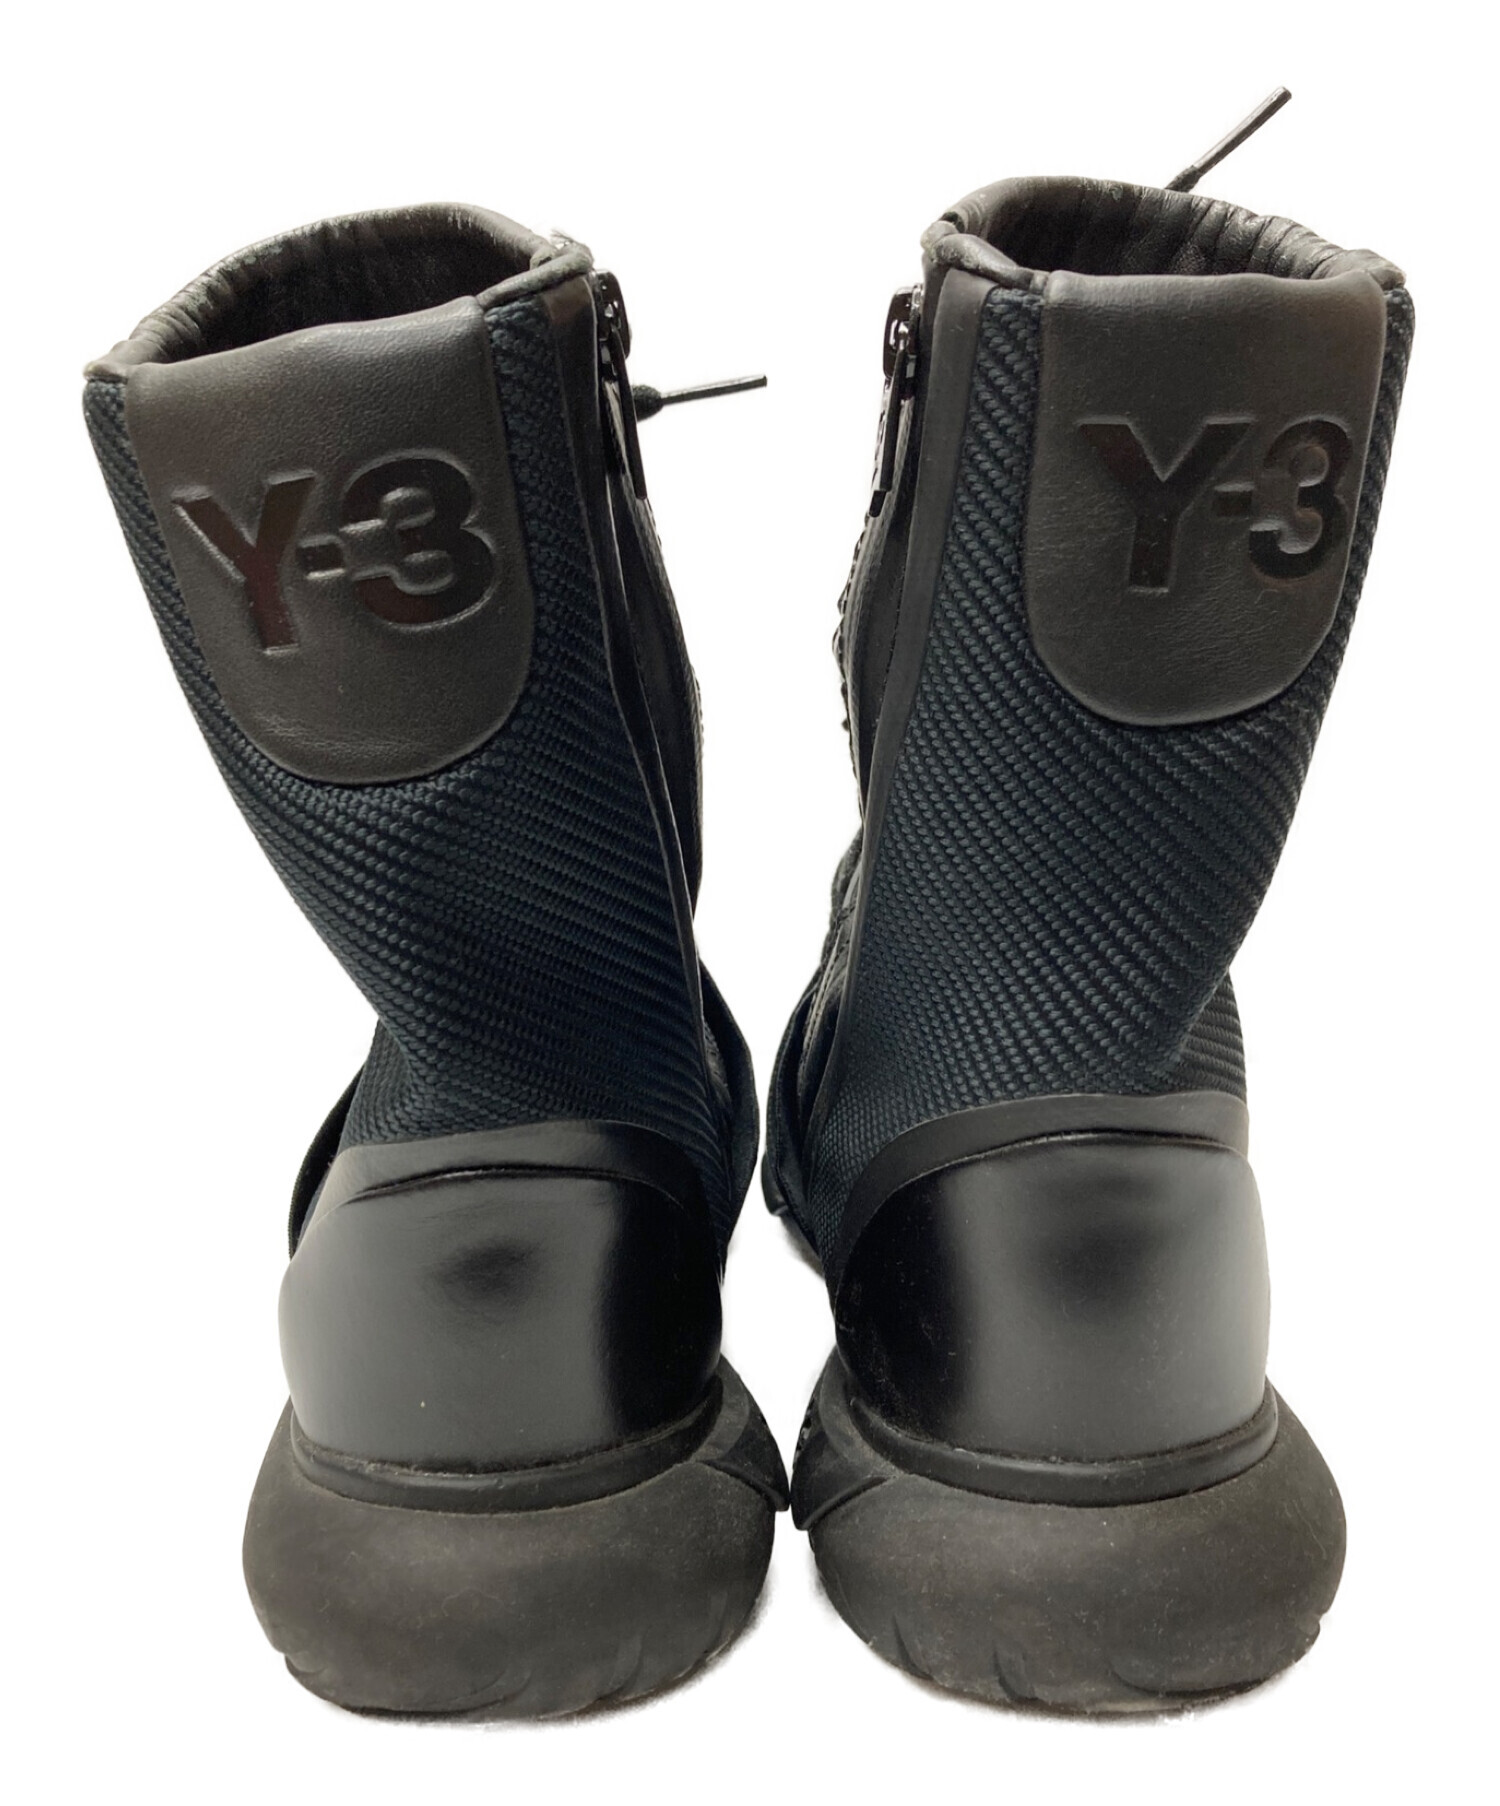 Y-3 (ワイスリー) カーサブーツ ブラック サイズ:27.0cm